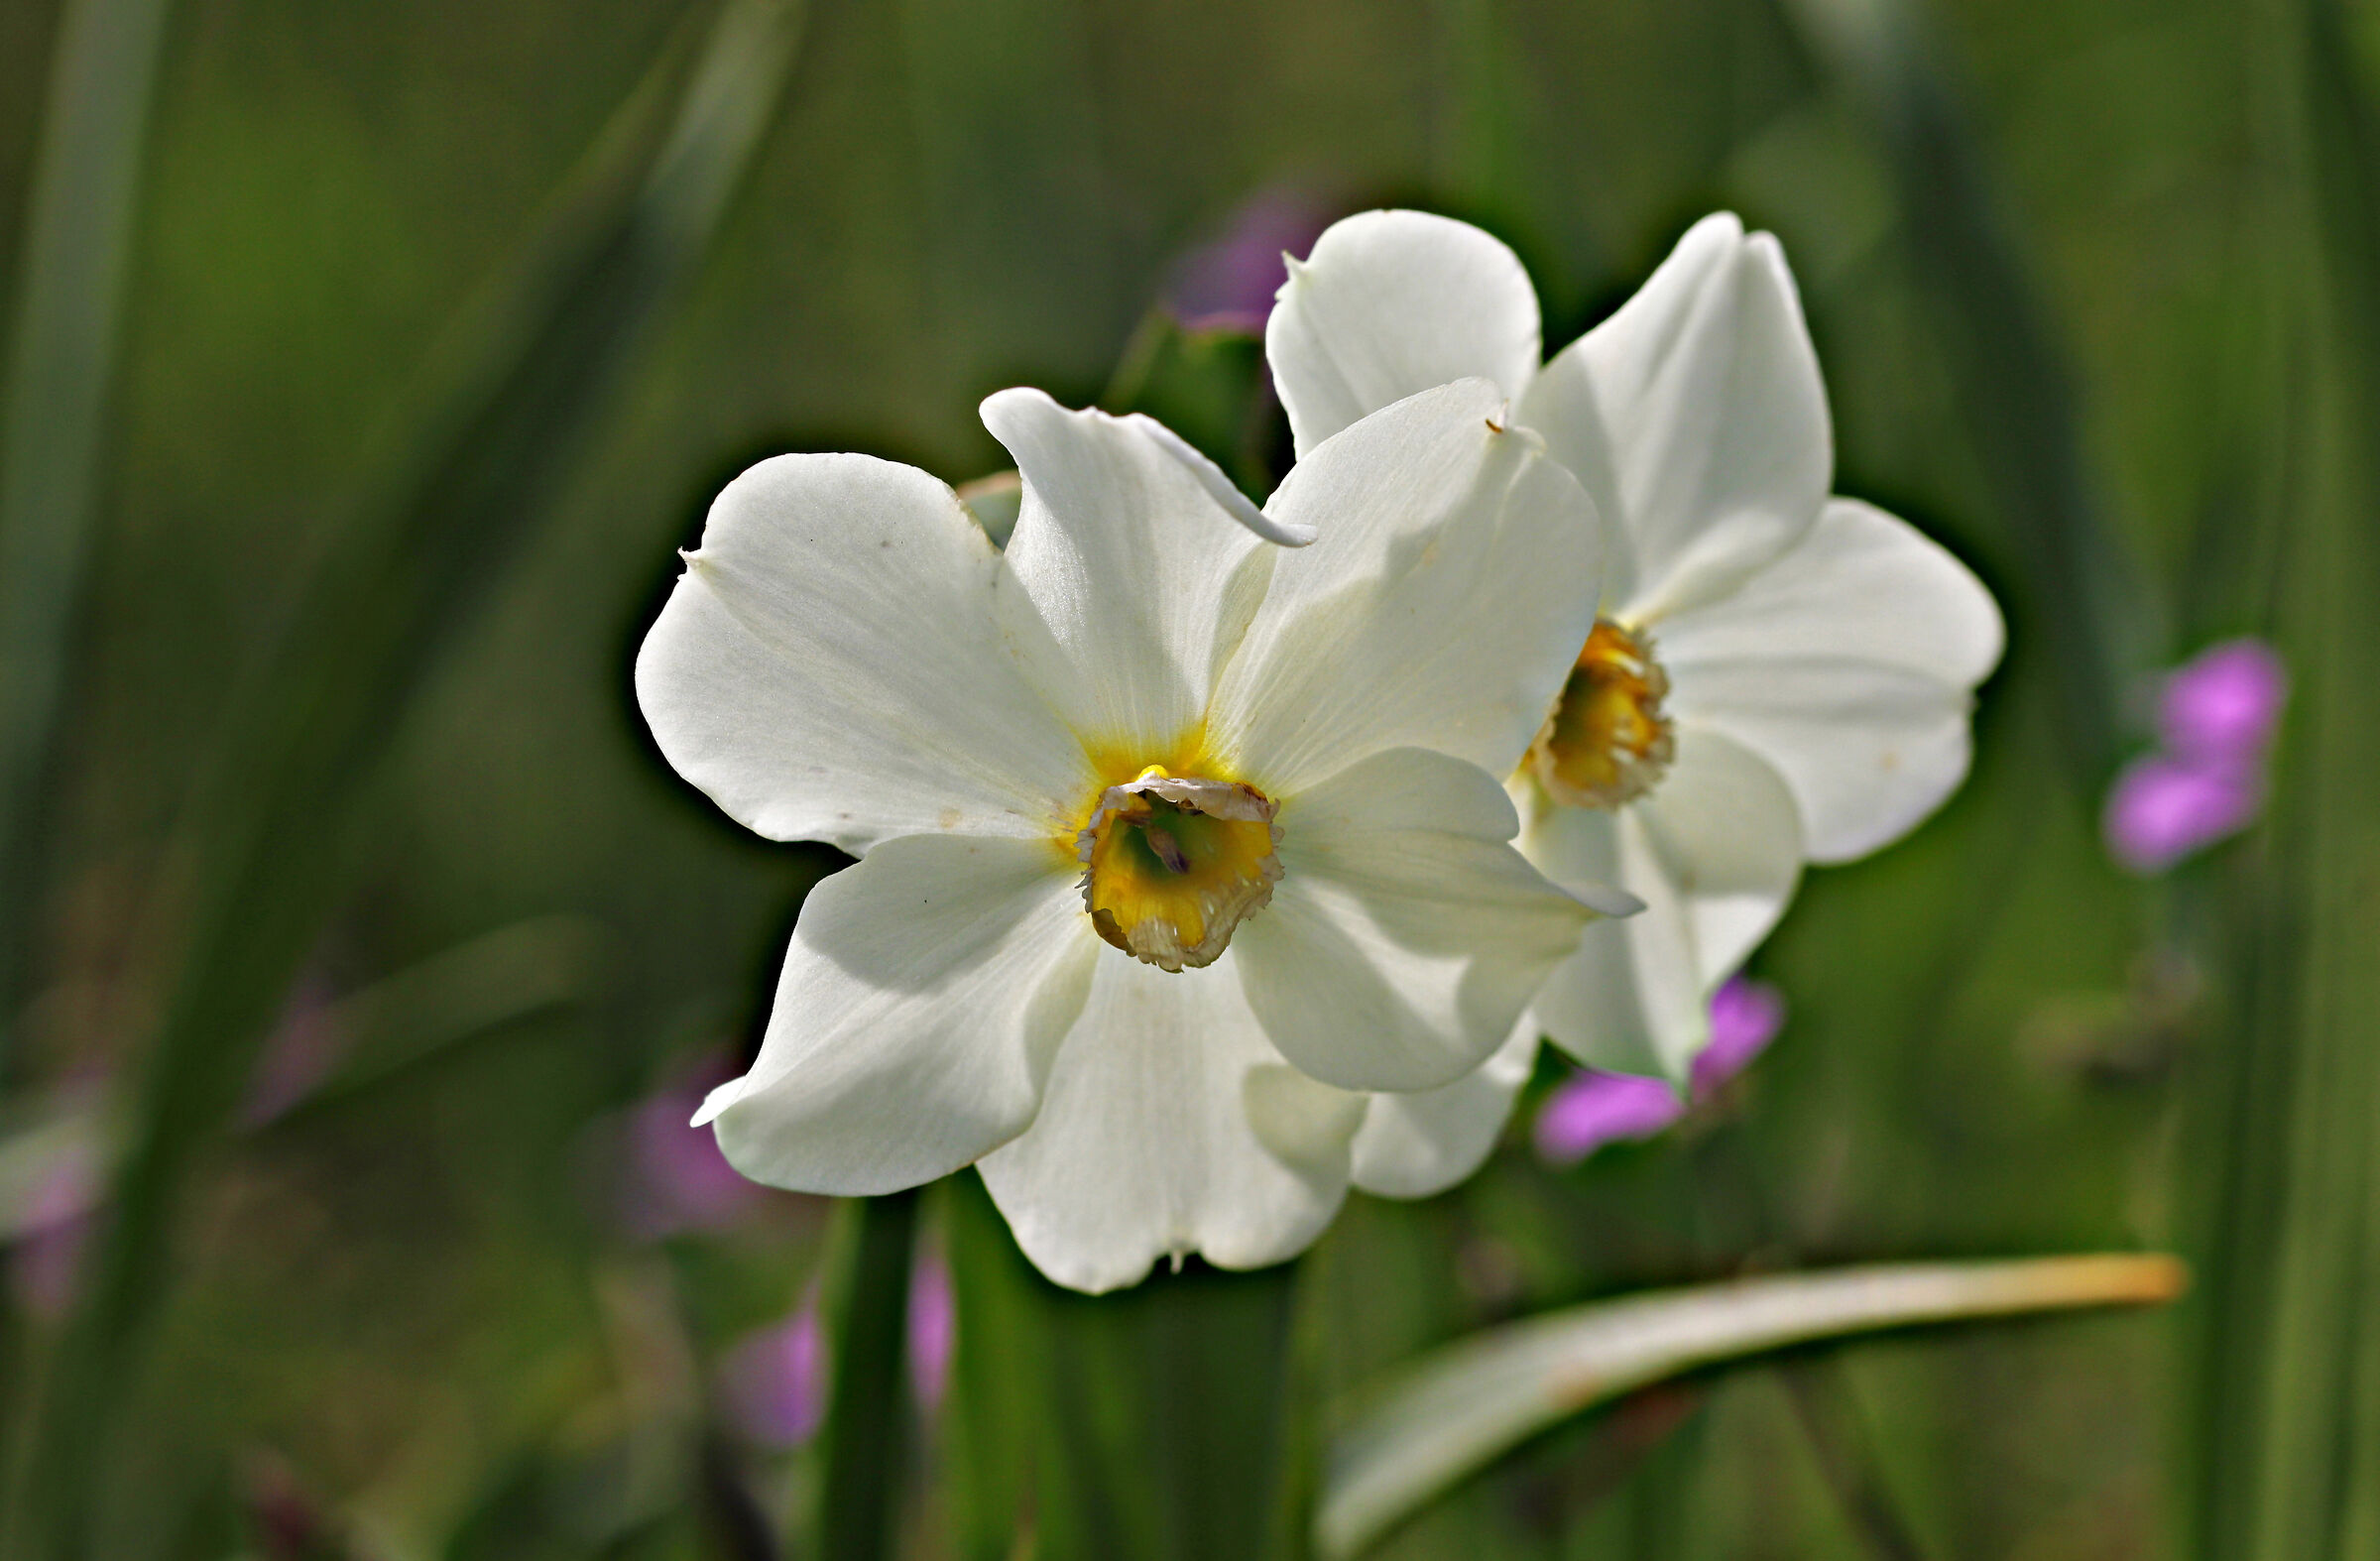 Daffodils a little worn...